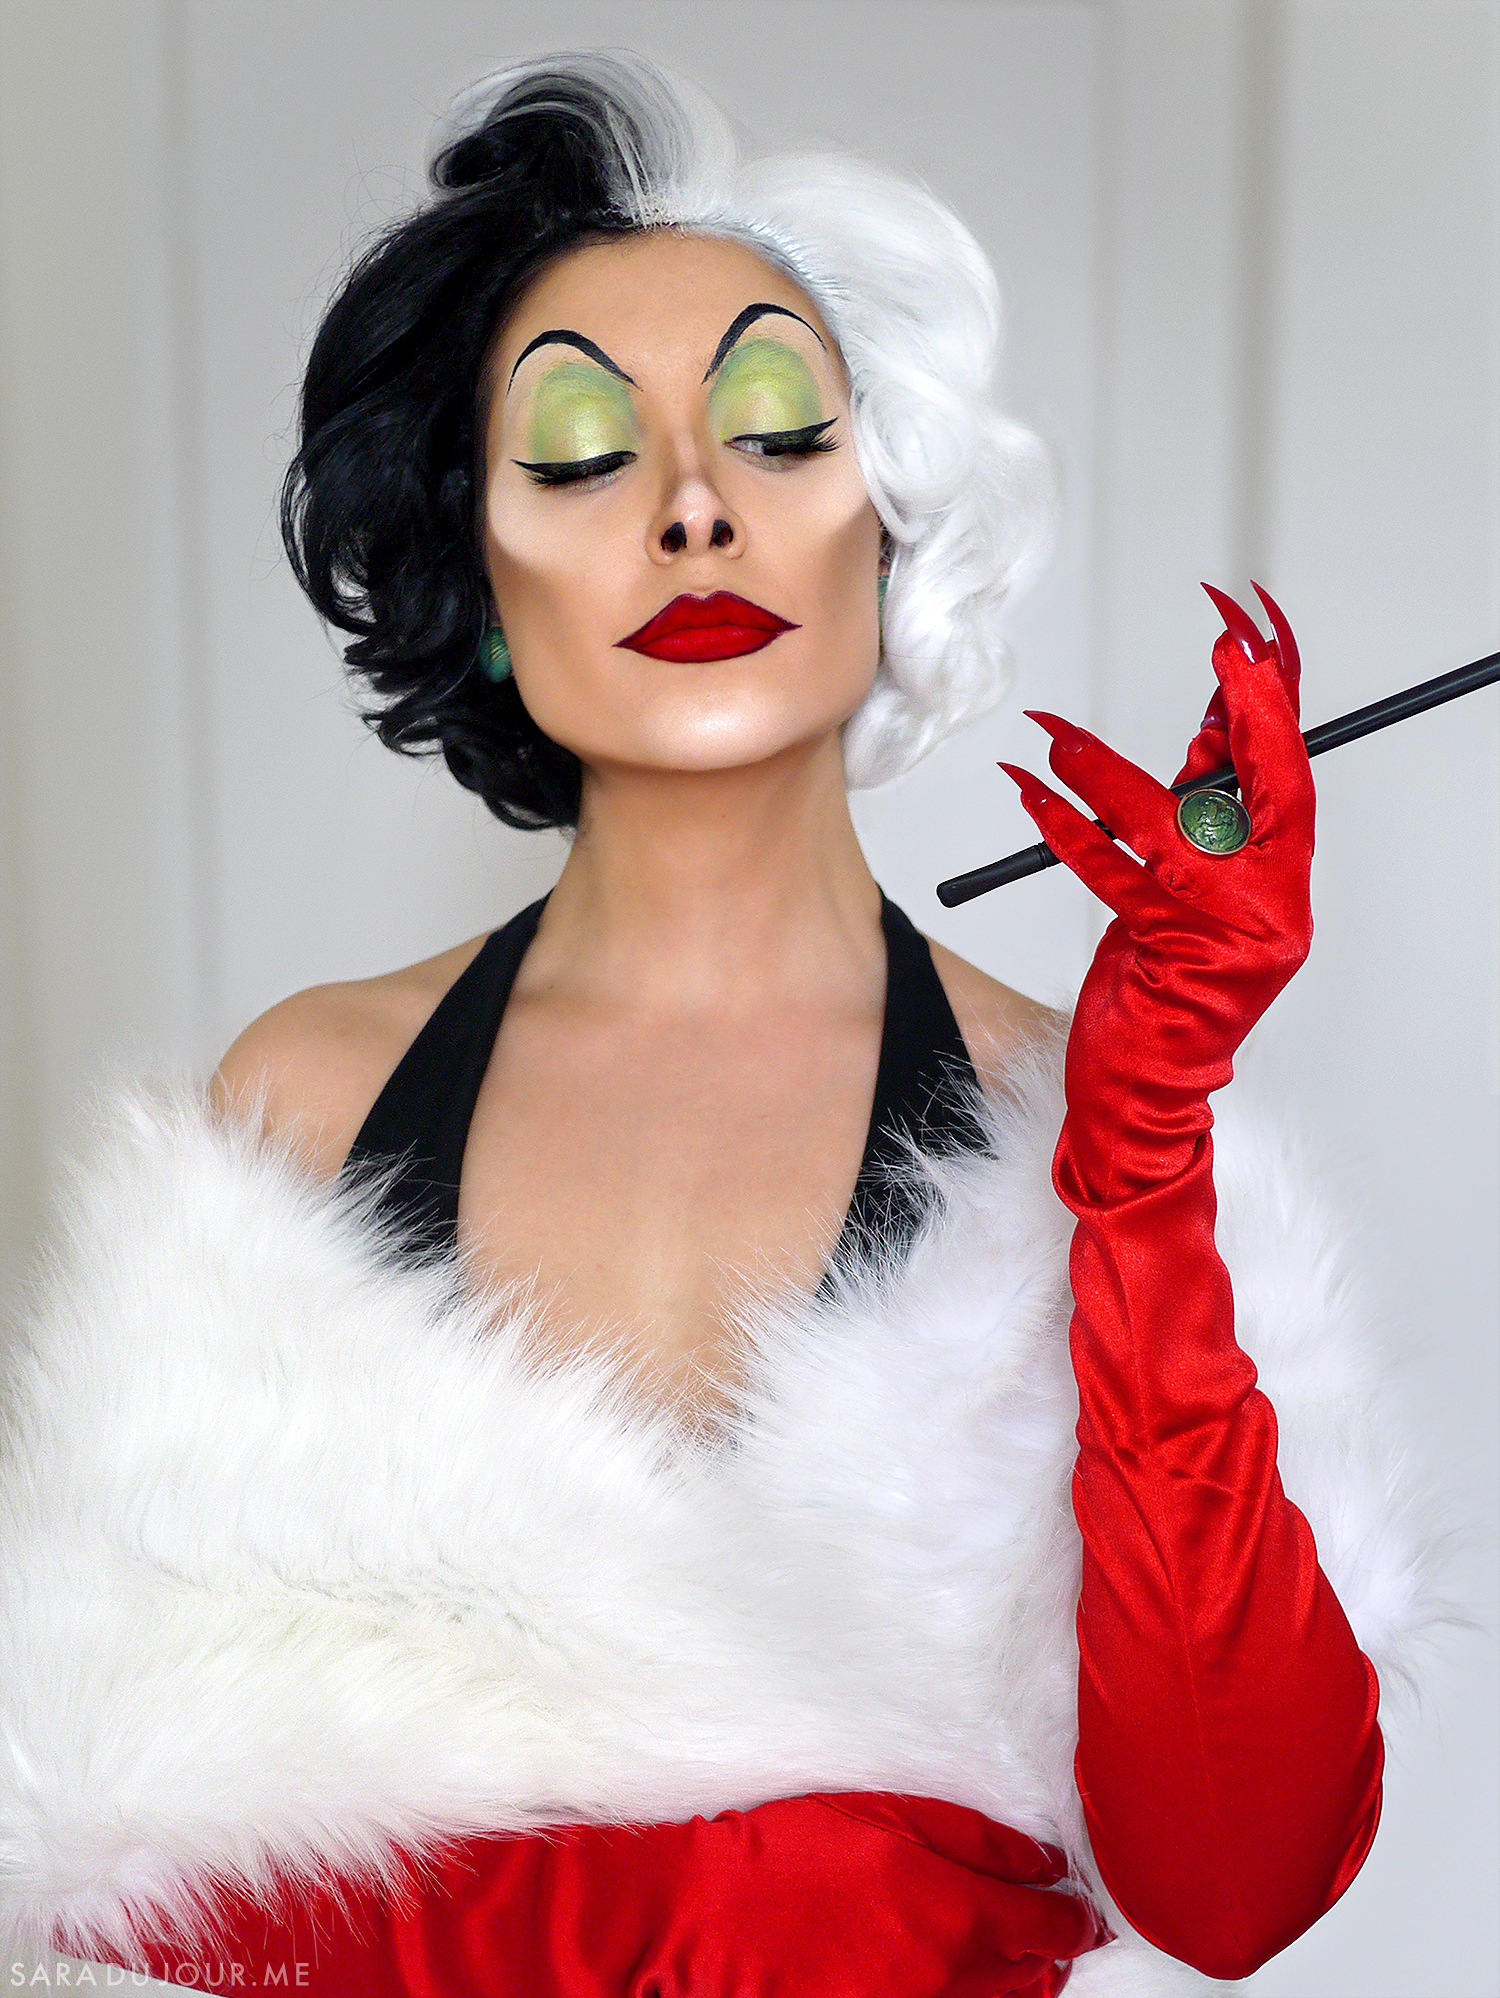 Cruella de Vil Cosplay Makeup Transformation | Sara du Jour